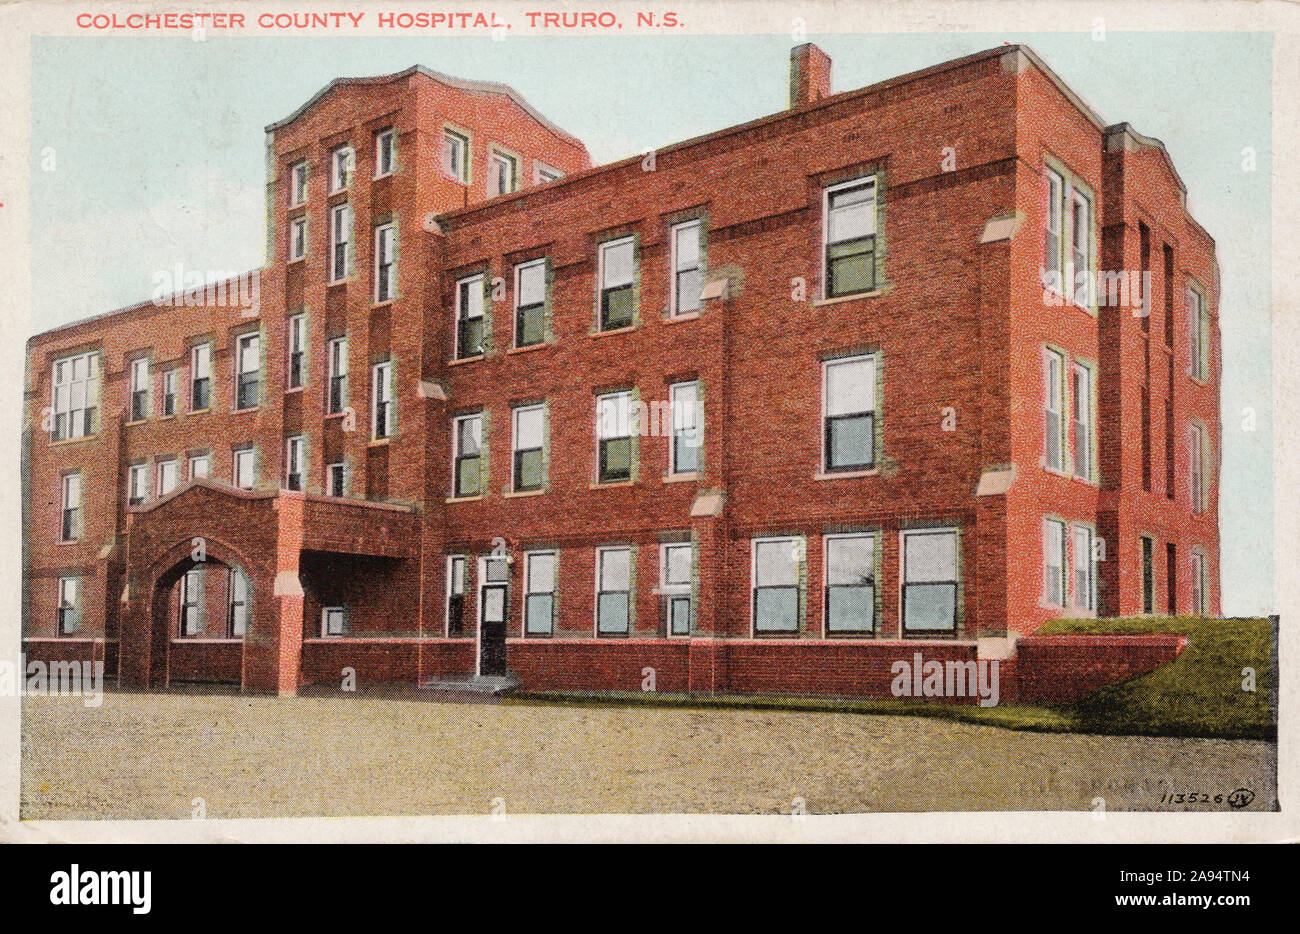 L'Hôpital du comté de Colchester, Truro, Nouvelle-Écosse Canada, vieille carte postale. Banque D'Images